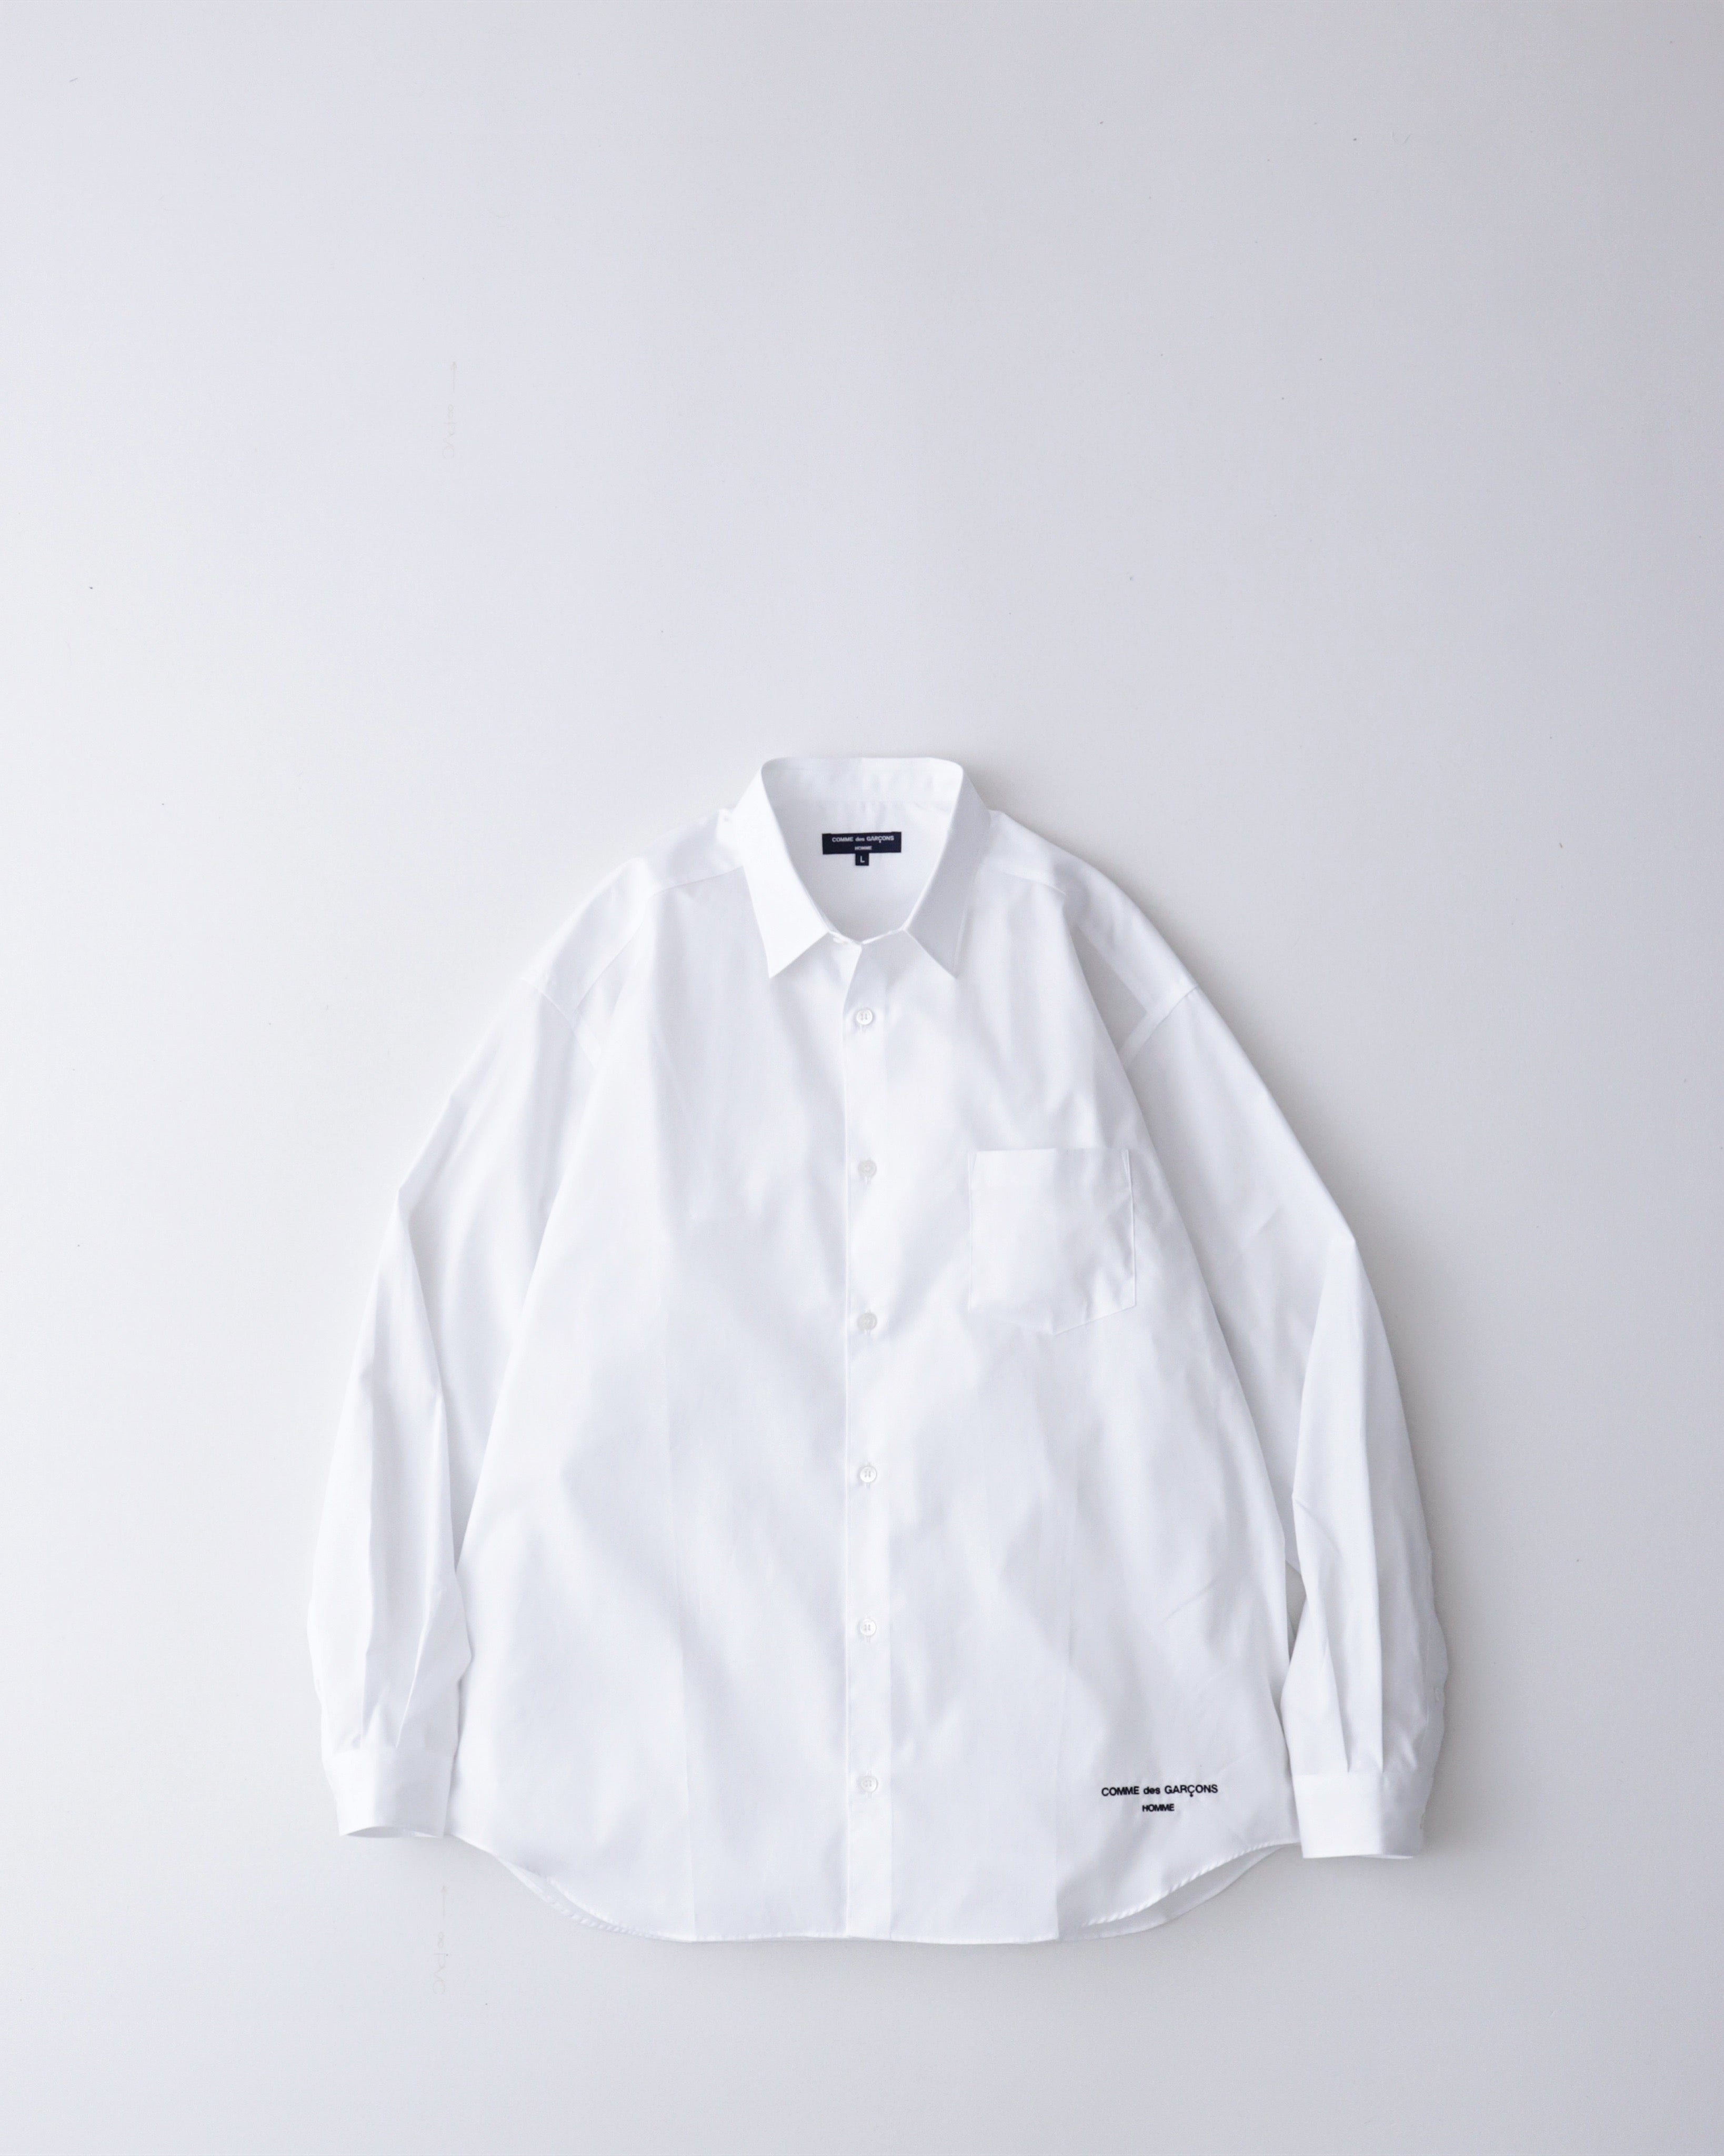 日本製 15s' CdG HP broad/dress long shirts